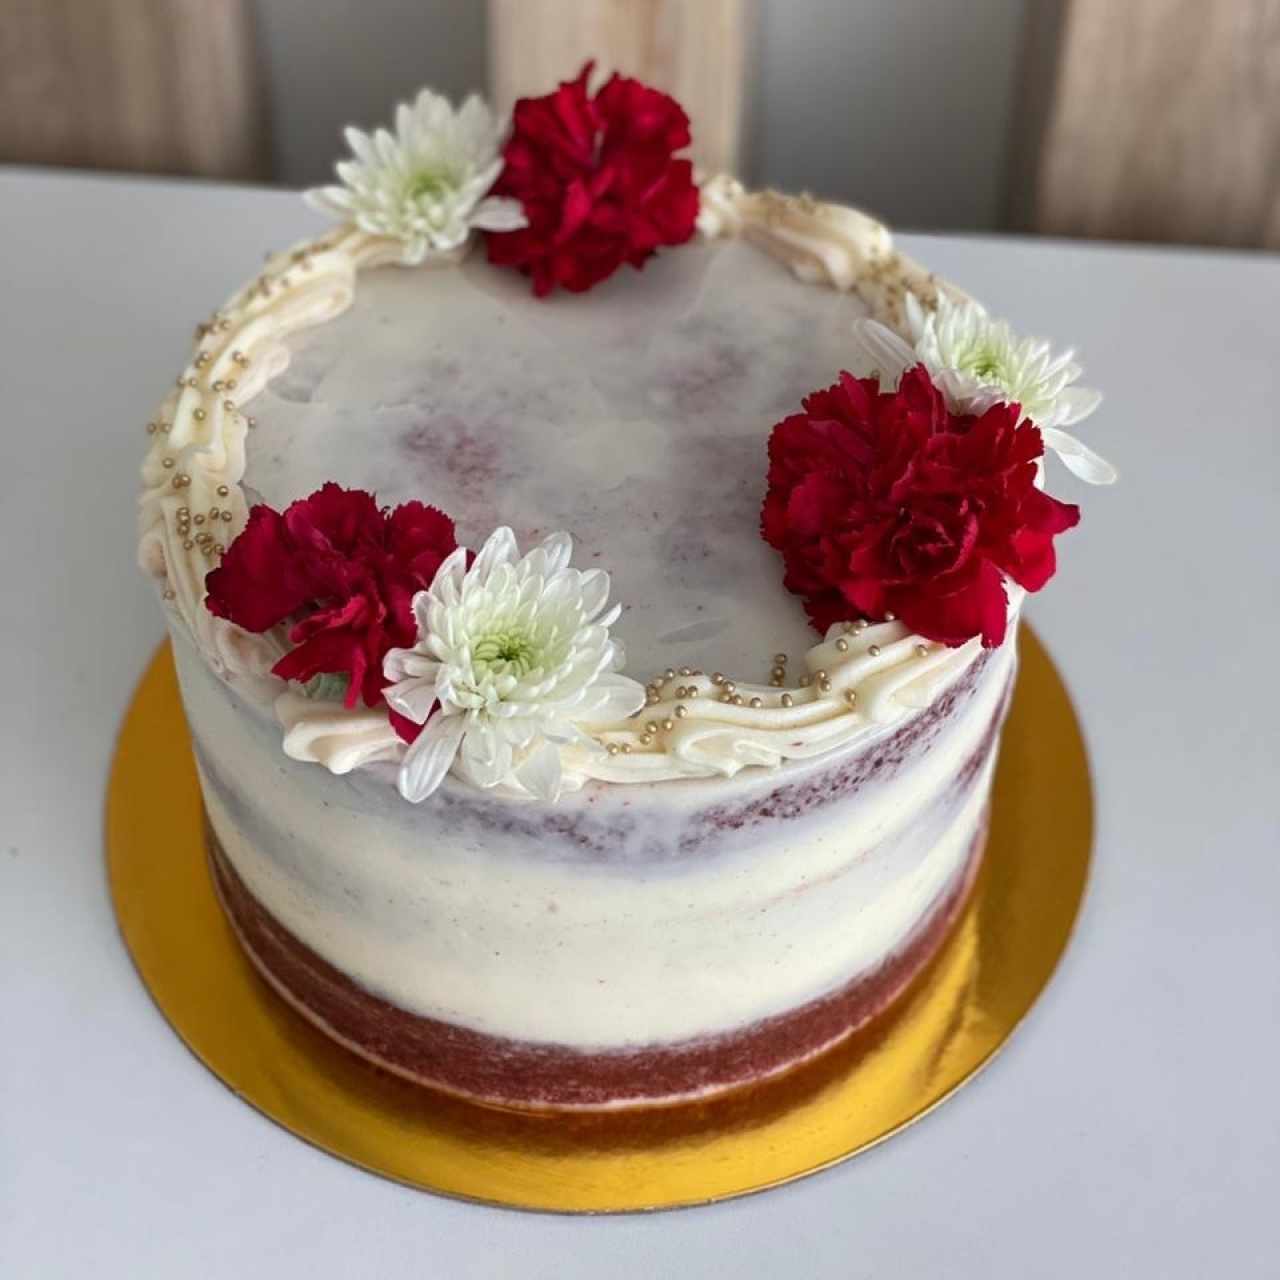 cake de red velvet 